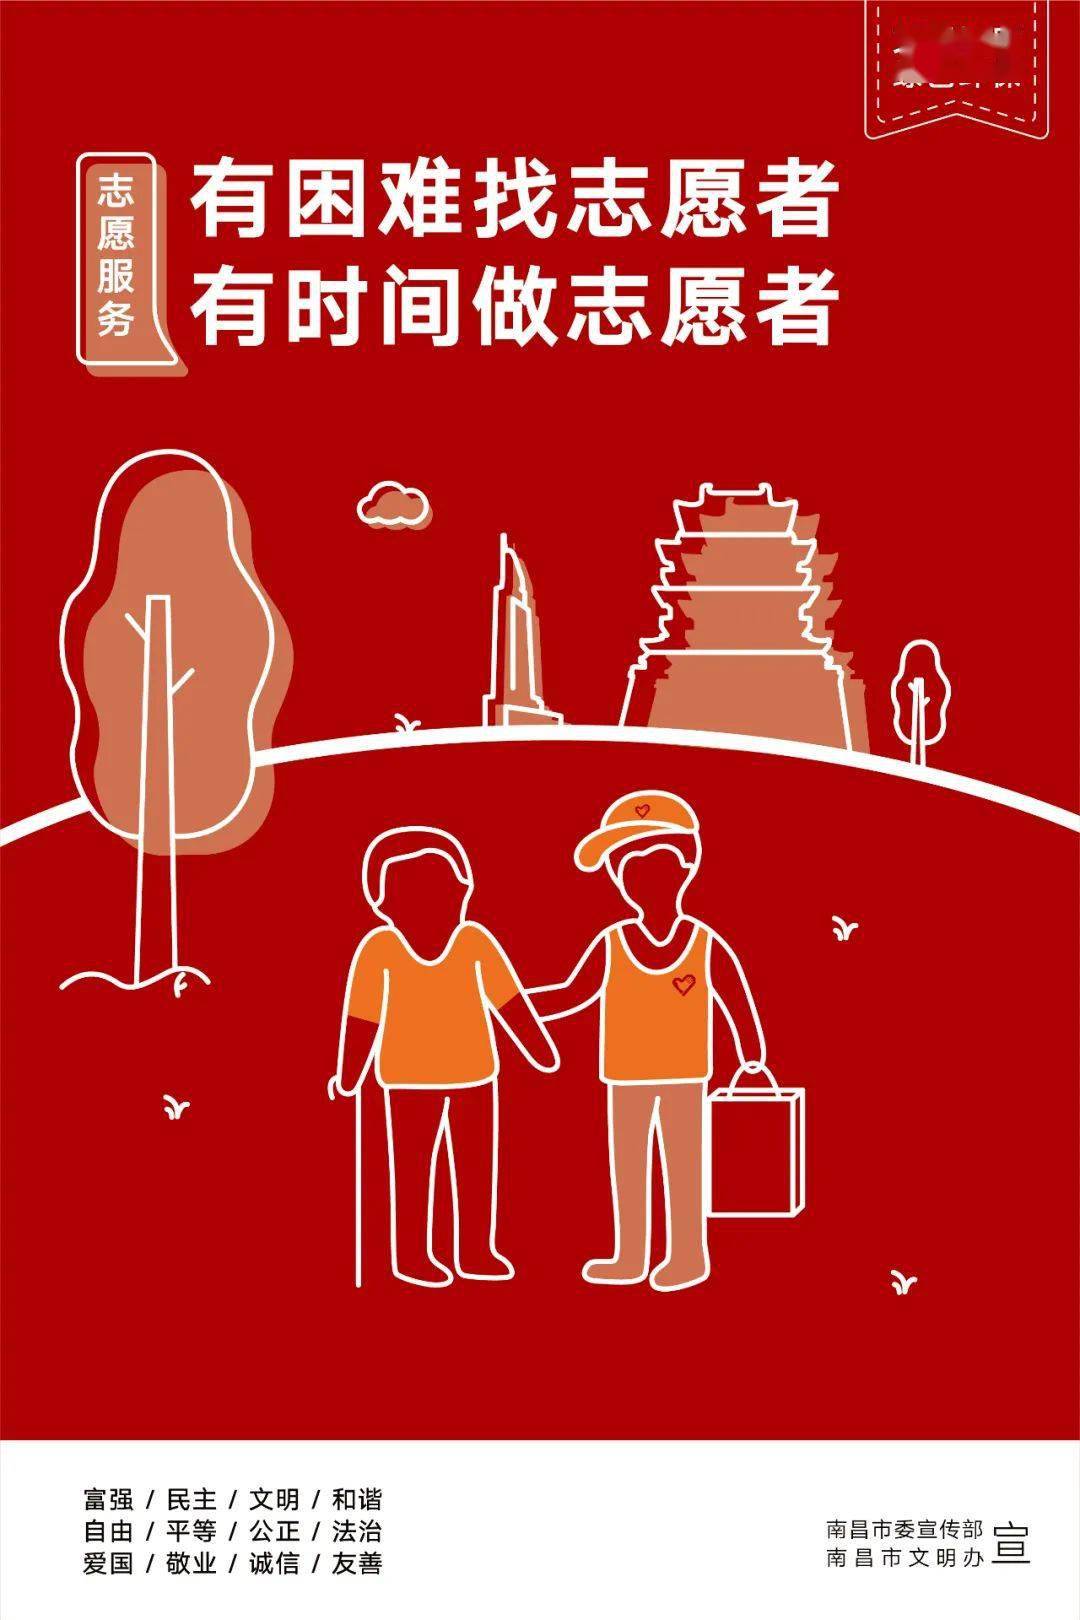 志愿服务活动"中国好人"道德模范事迹进校园【公益海报】邻里互助